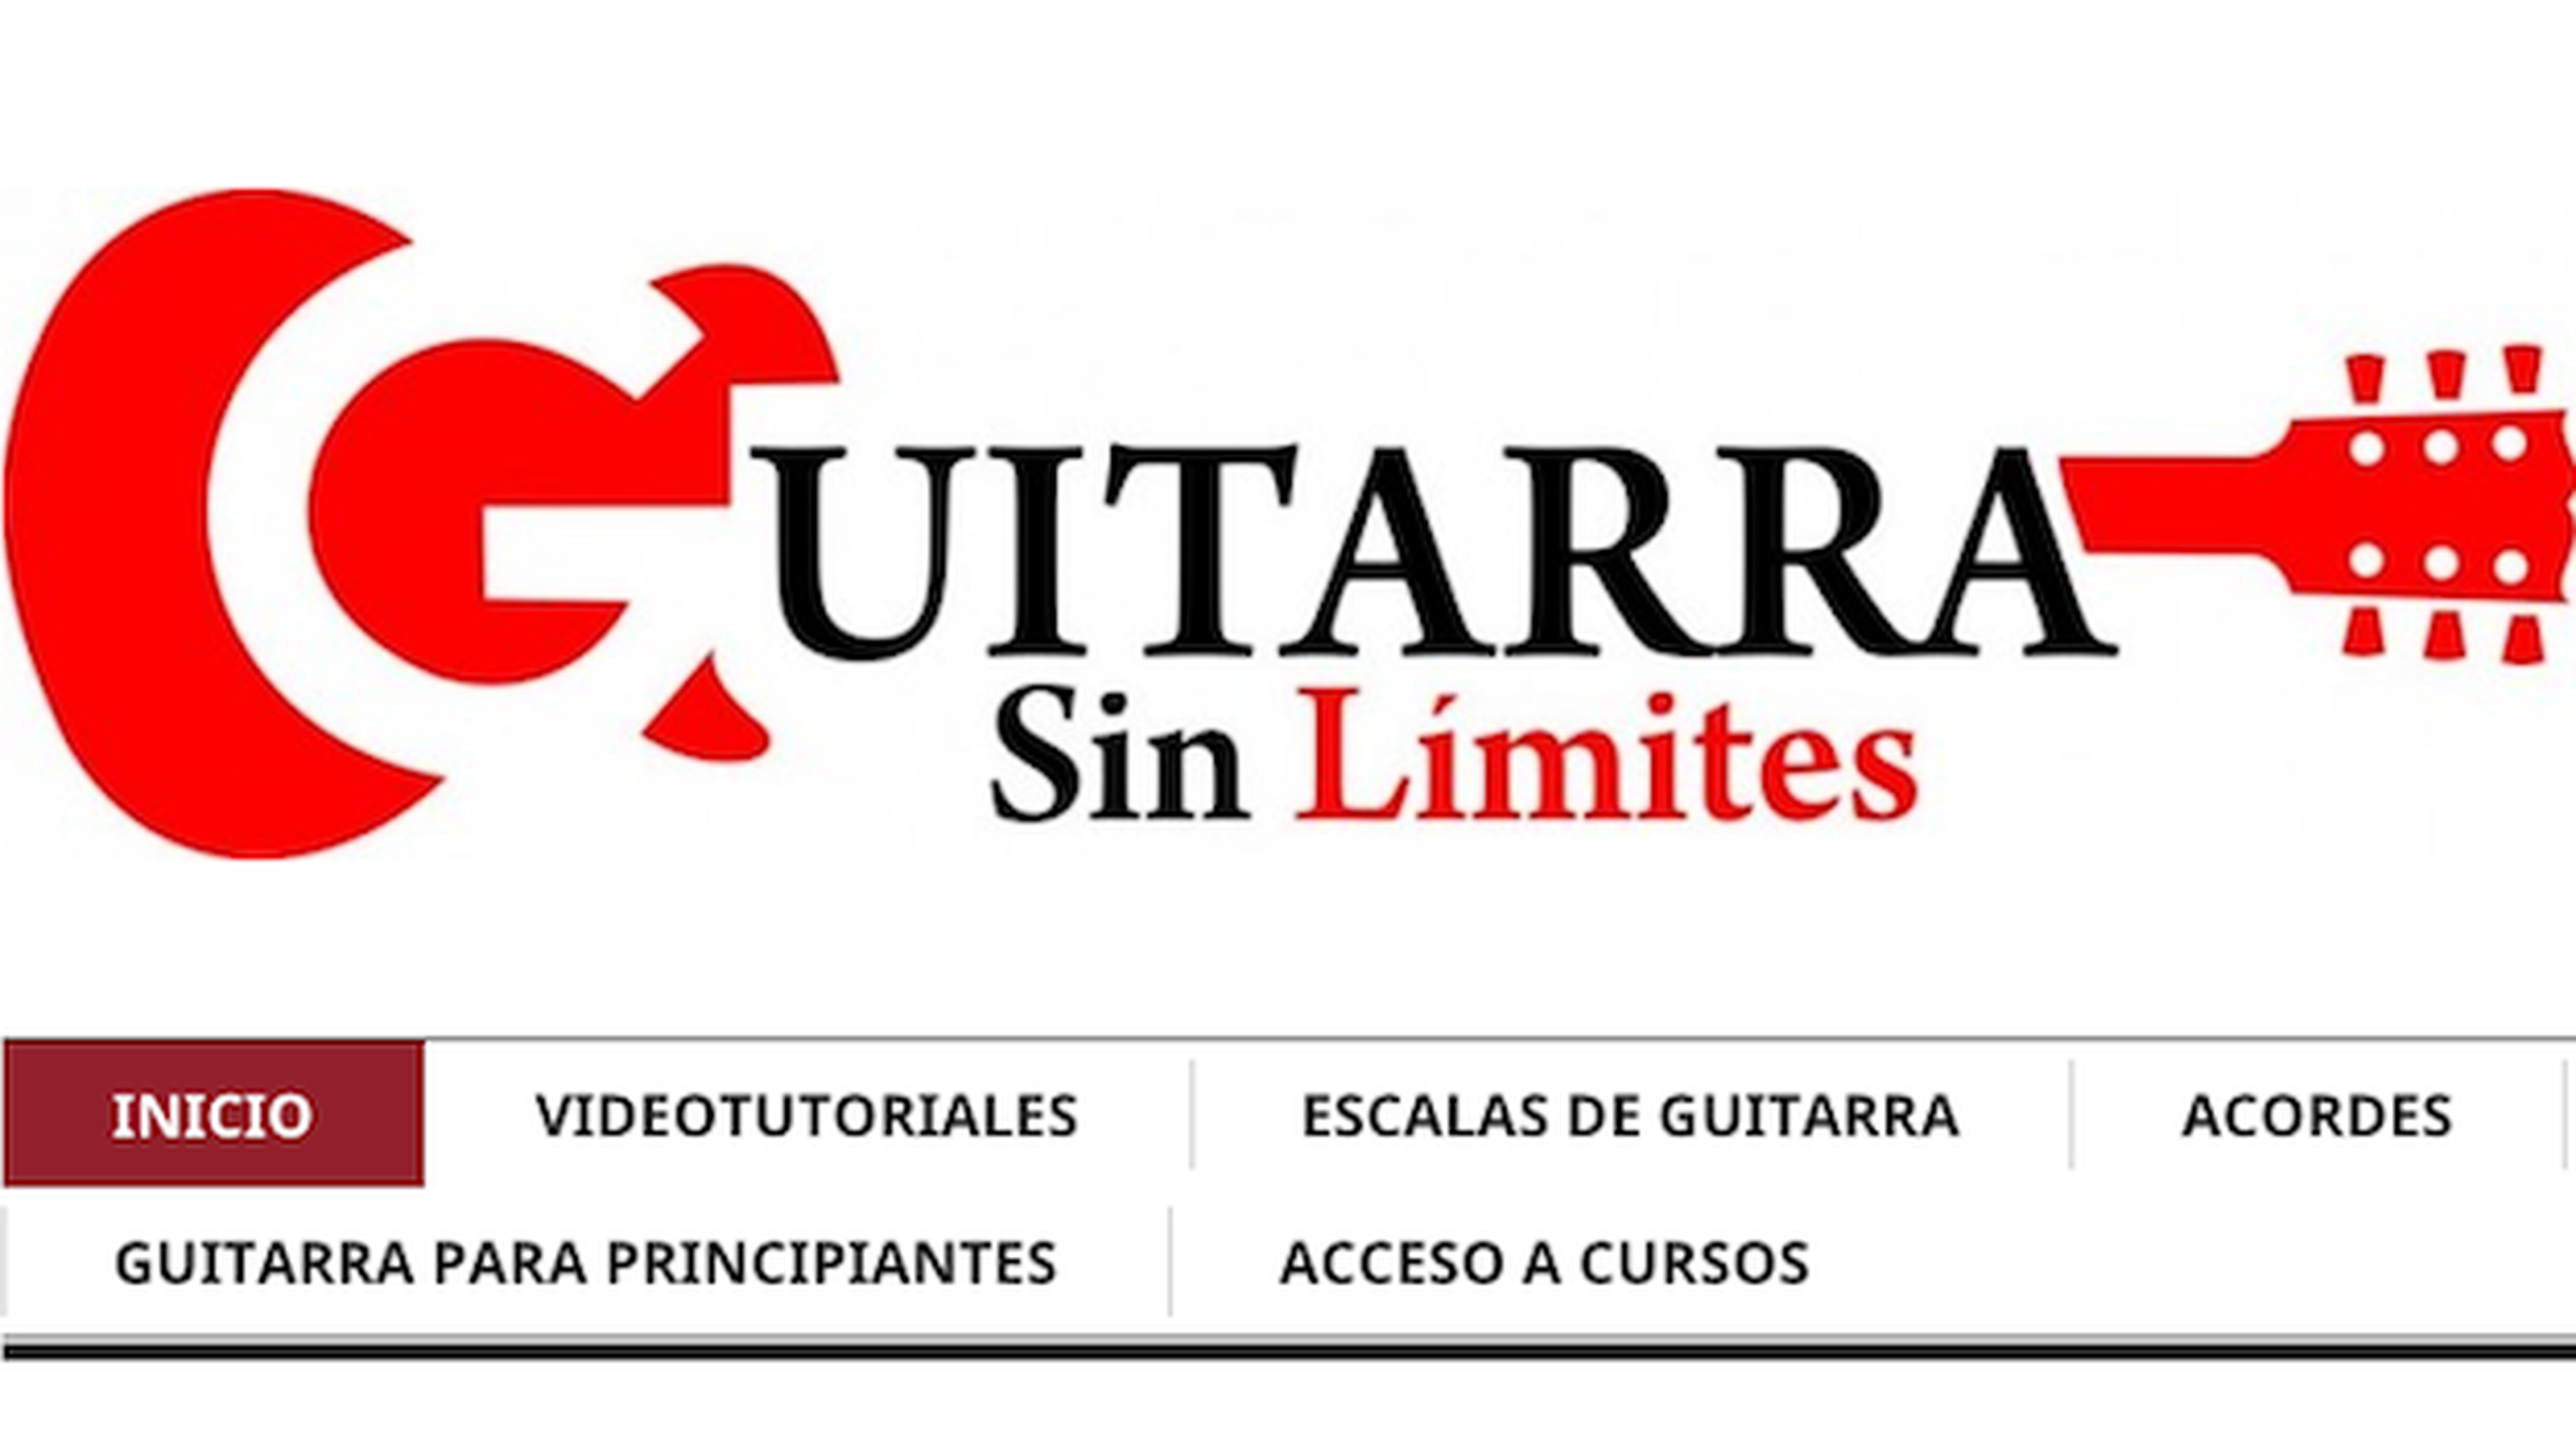 GuitarraSinLimites.com